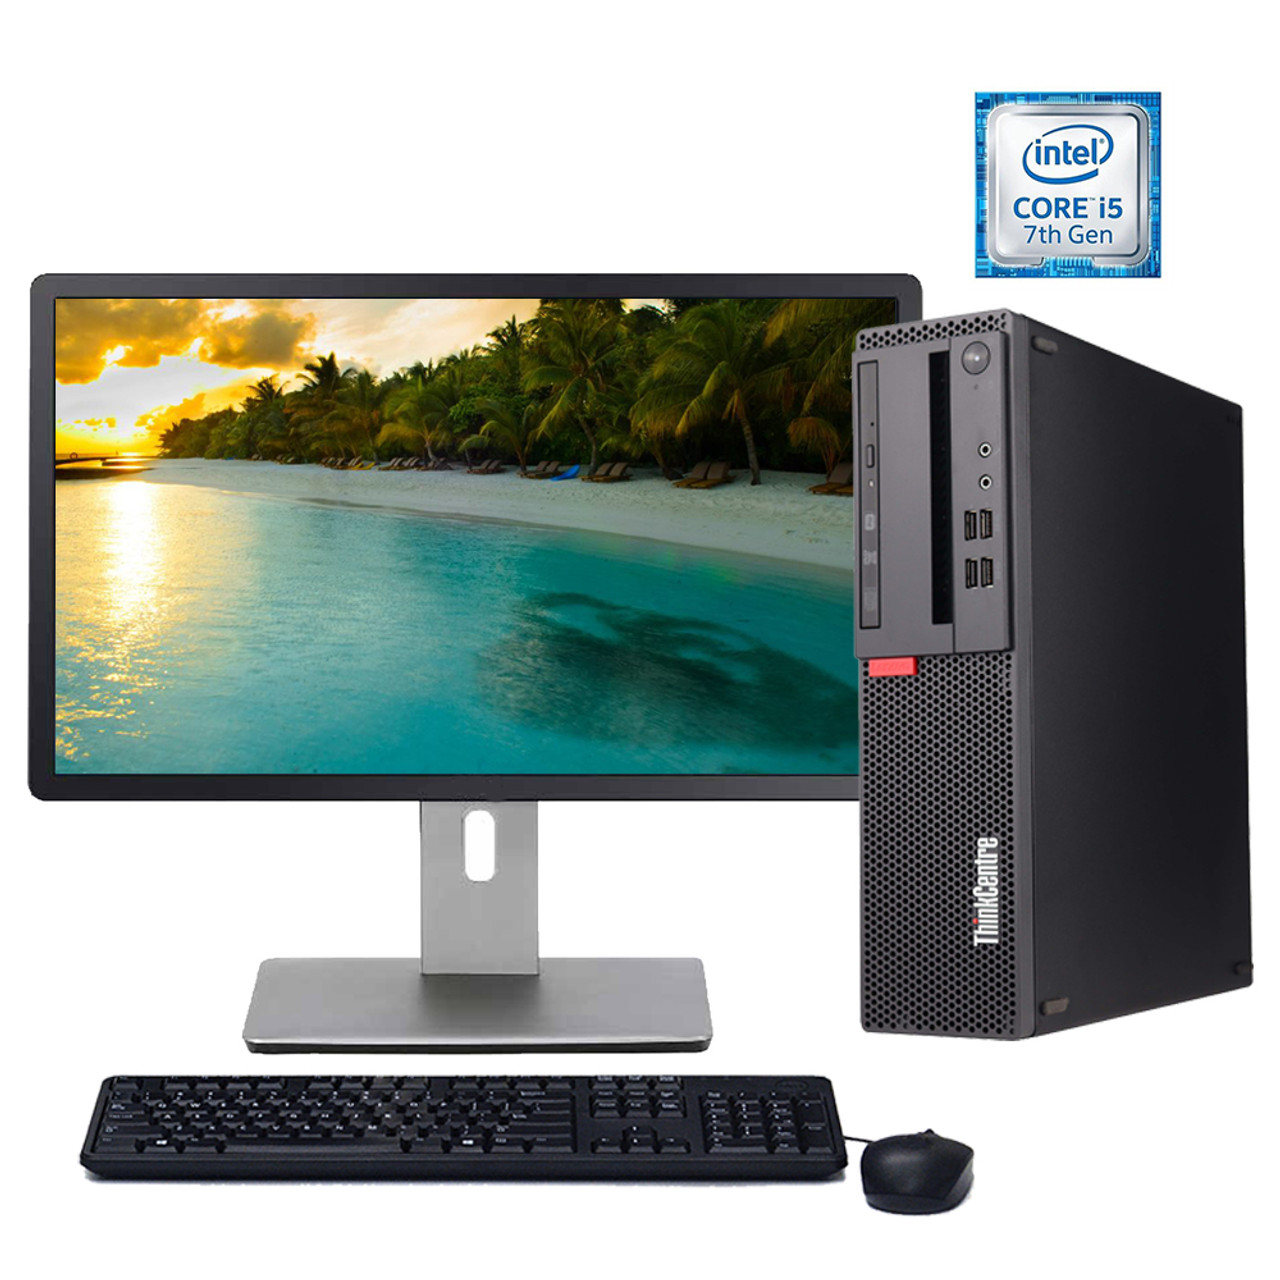 Pest Merg Aanbevolen Lenovo M710s Desktop Computer Core i5 7th Gen 3.0GHz Processor ( Customize  Your PC)